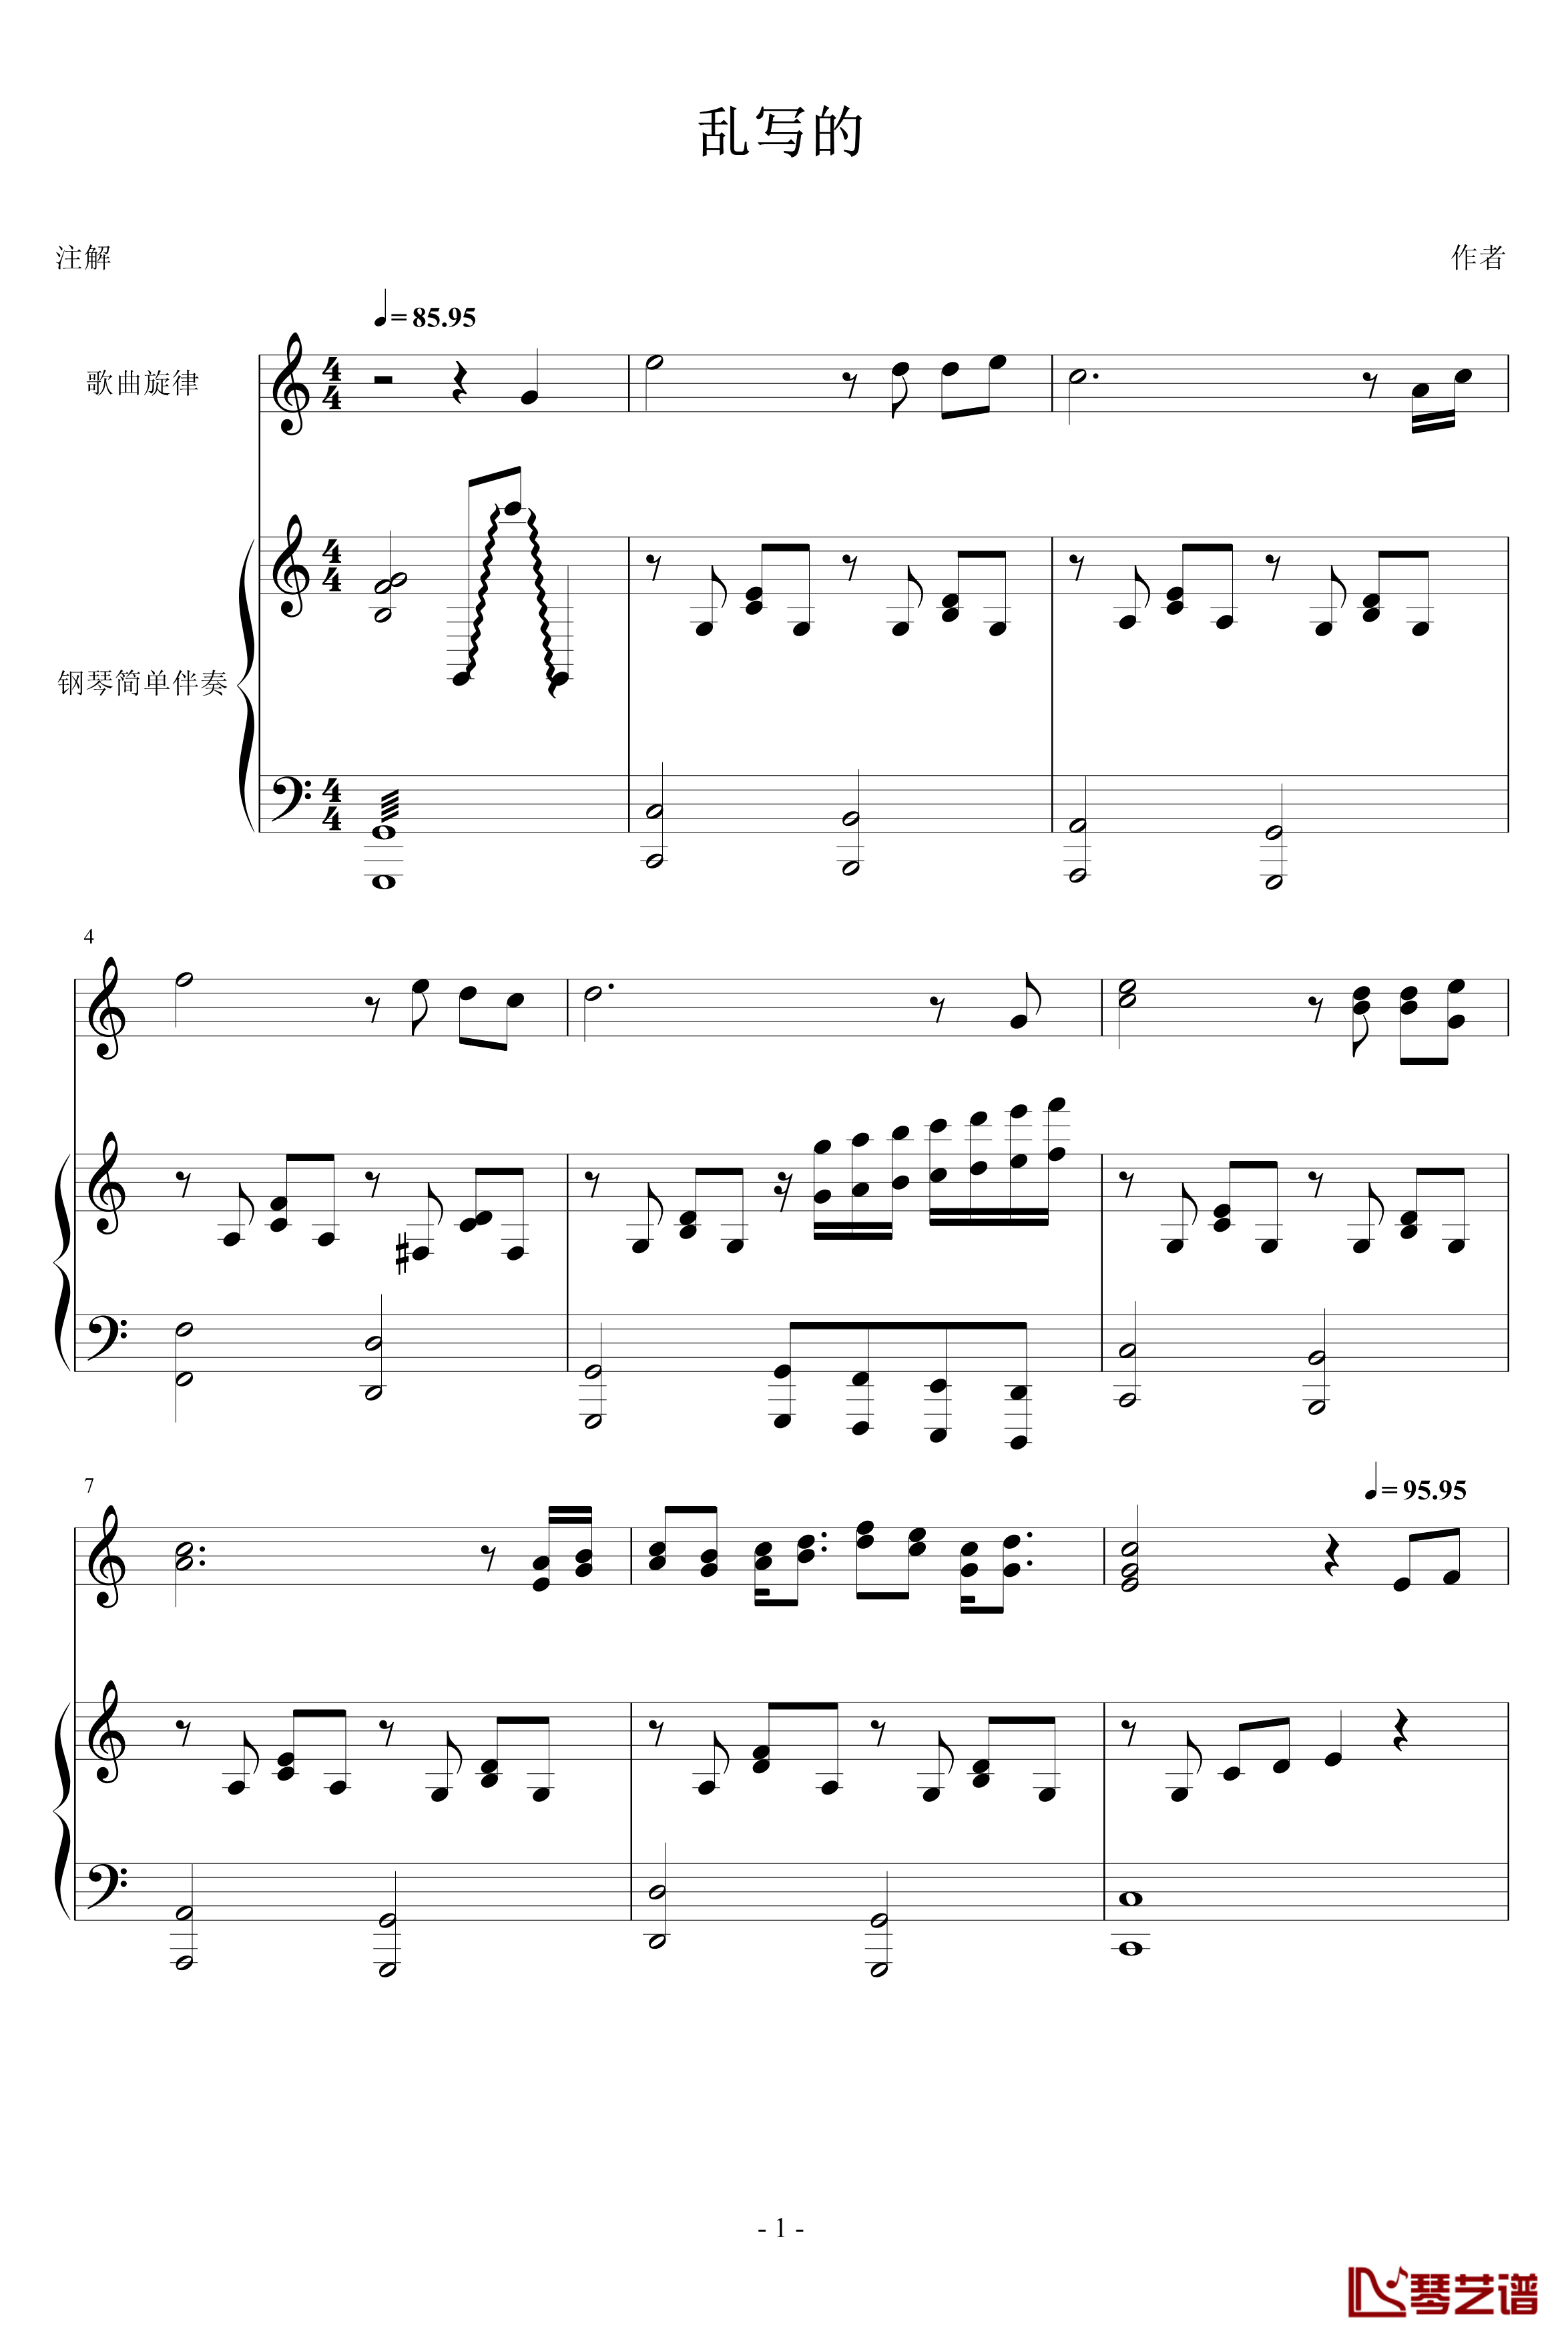 随意弹的钢琴谱-yiliang1